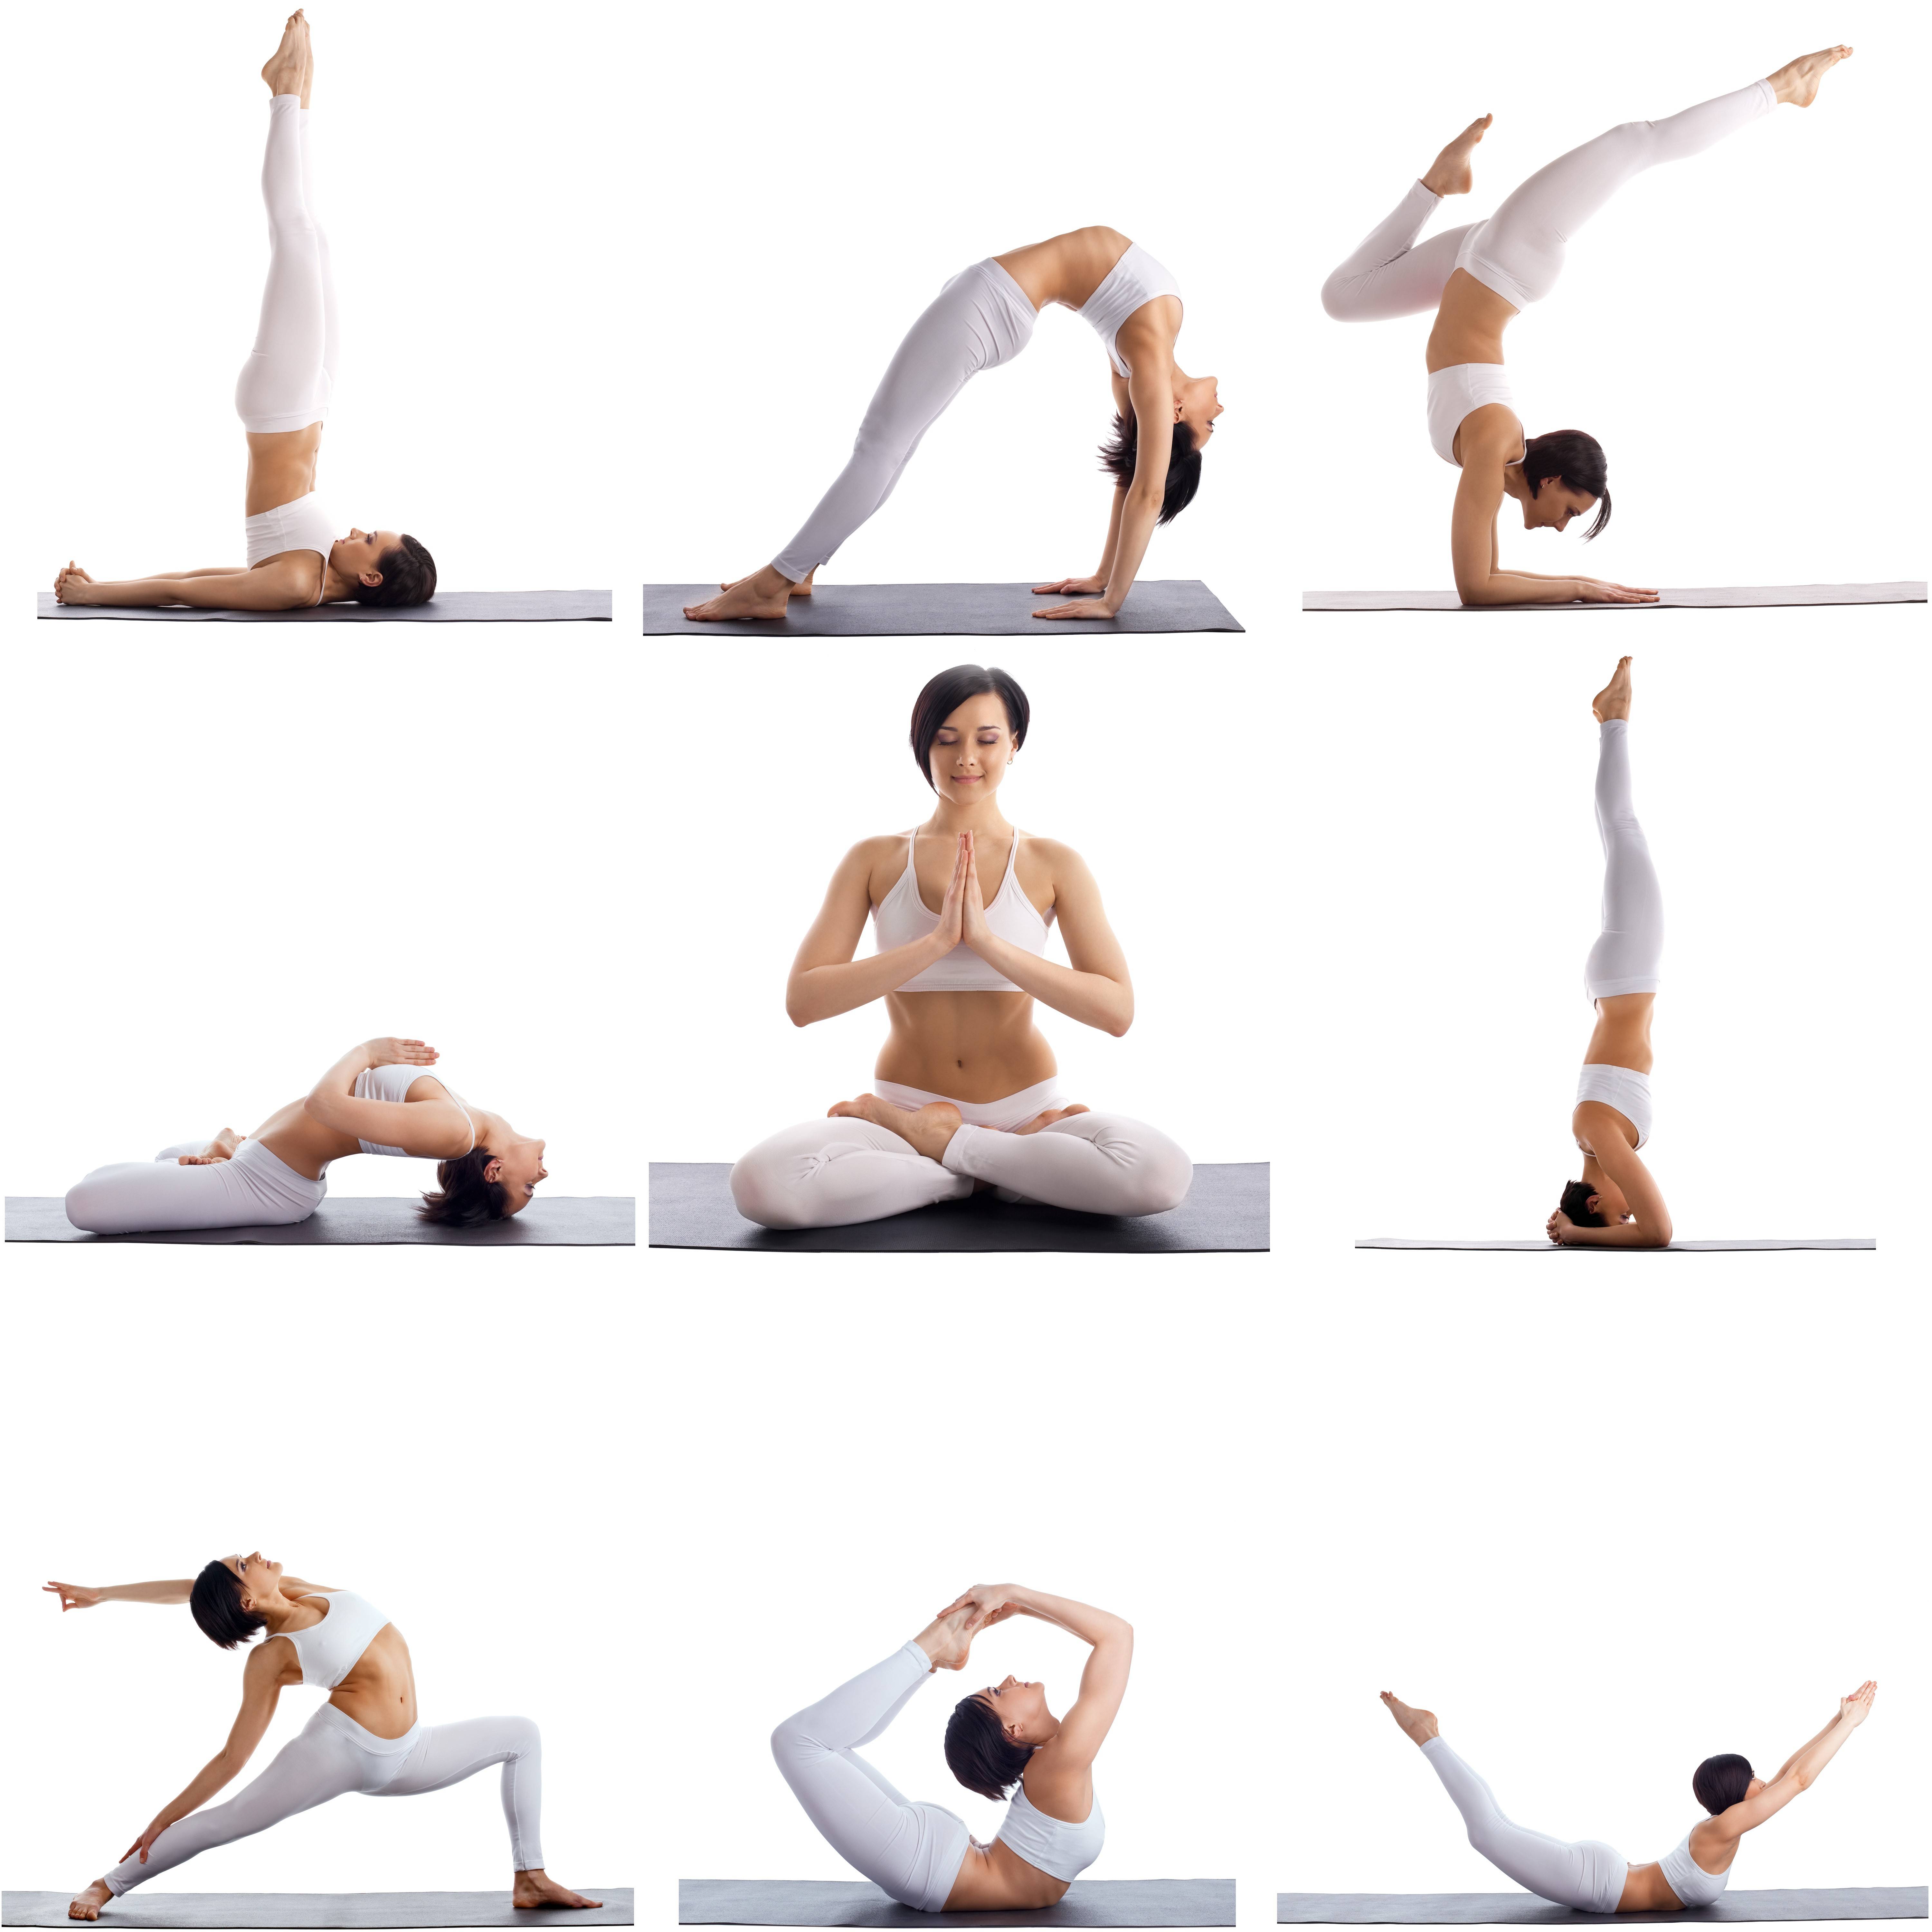 Бхакти-йога: разновидности, движения, цель учения